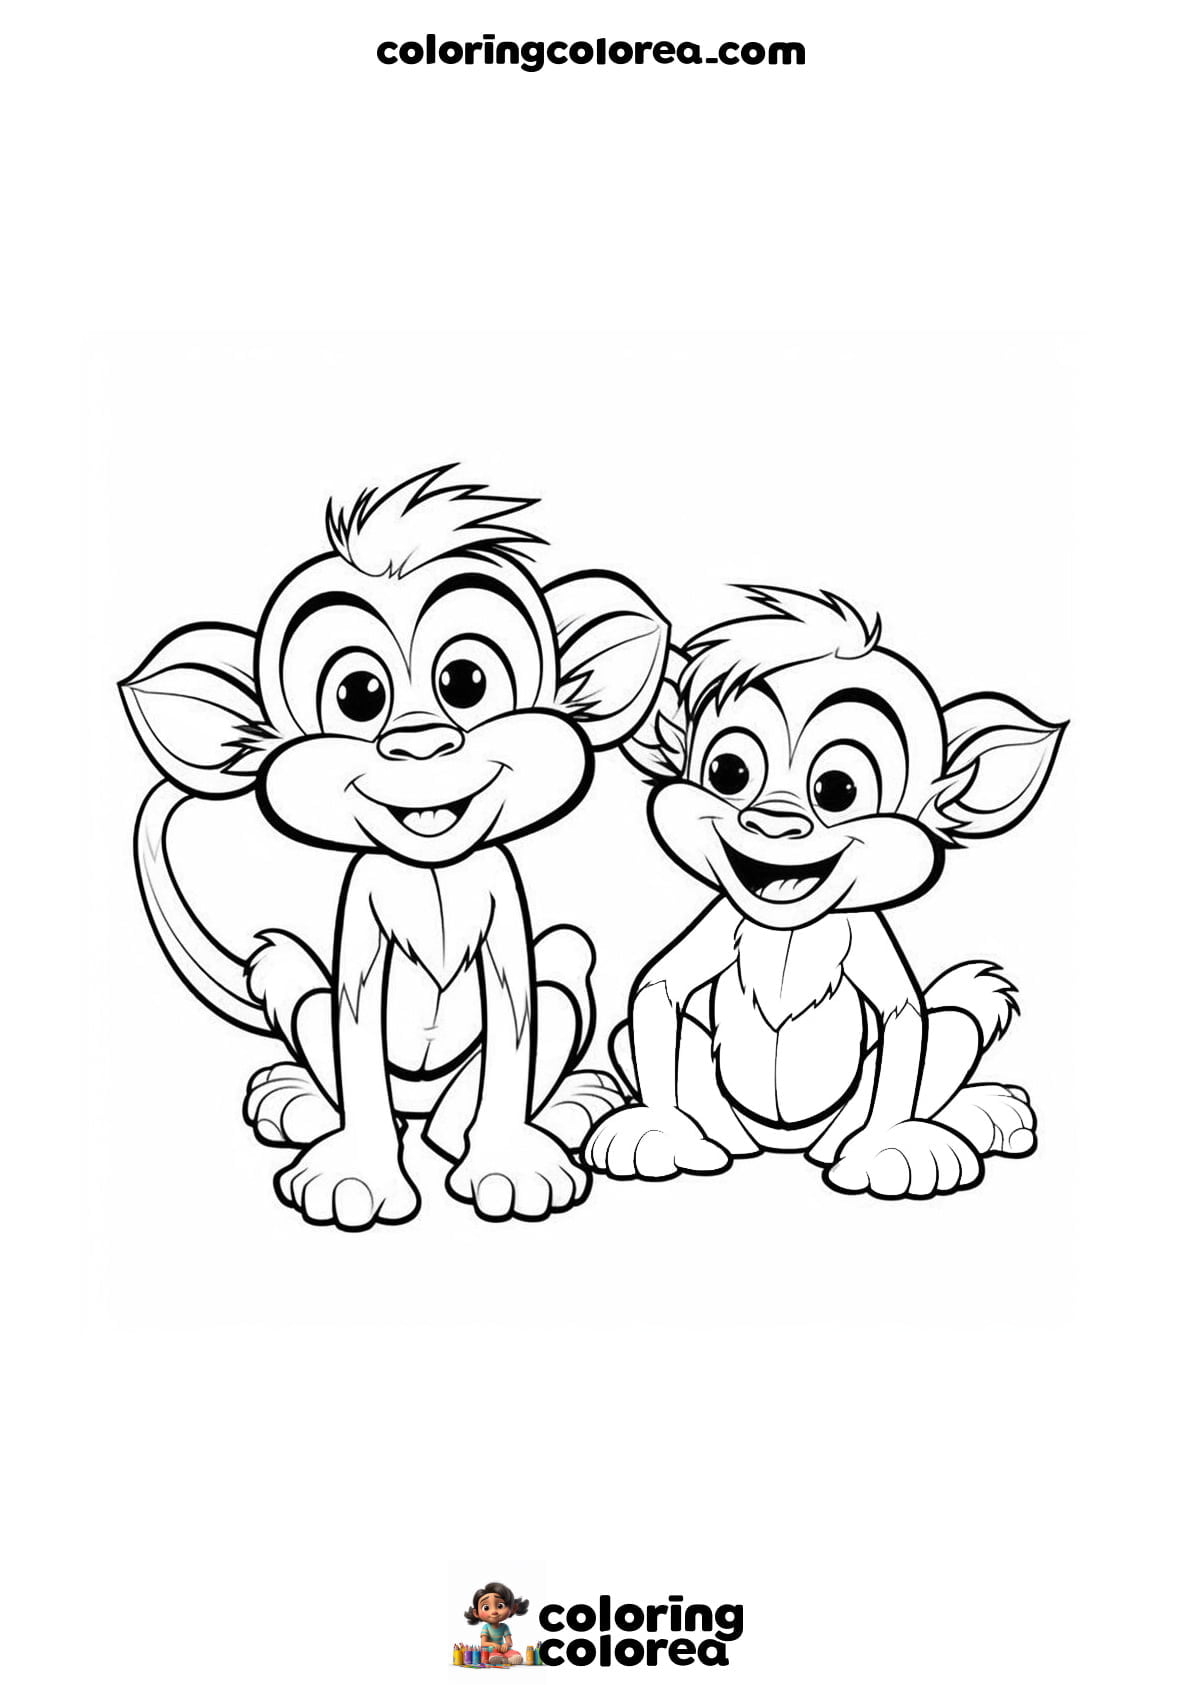 Imprime y colorea gratis a estos 2 monos amigos